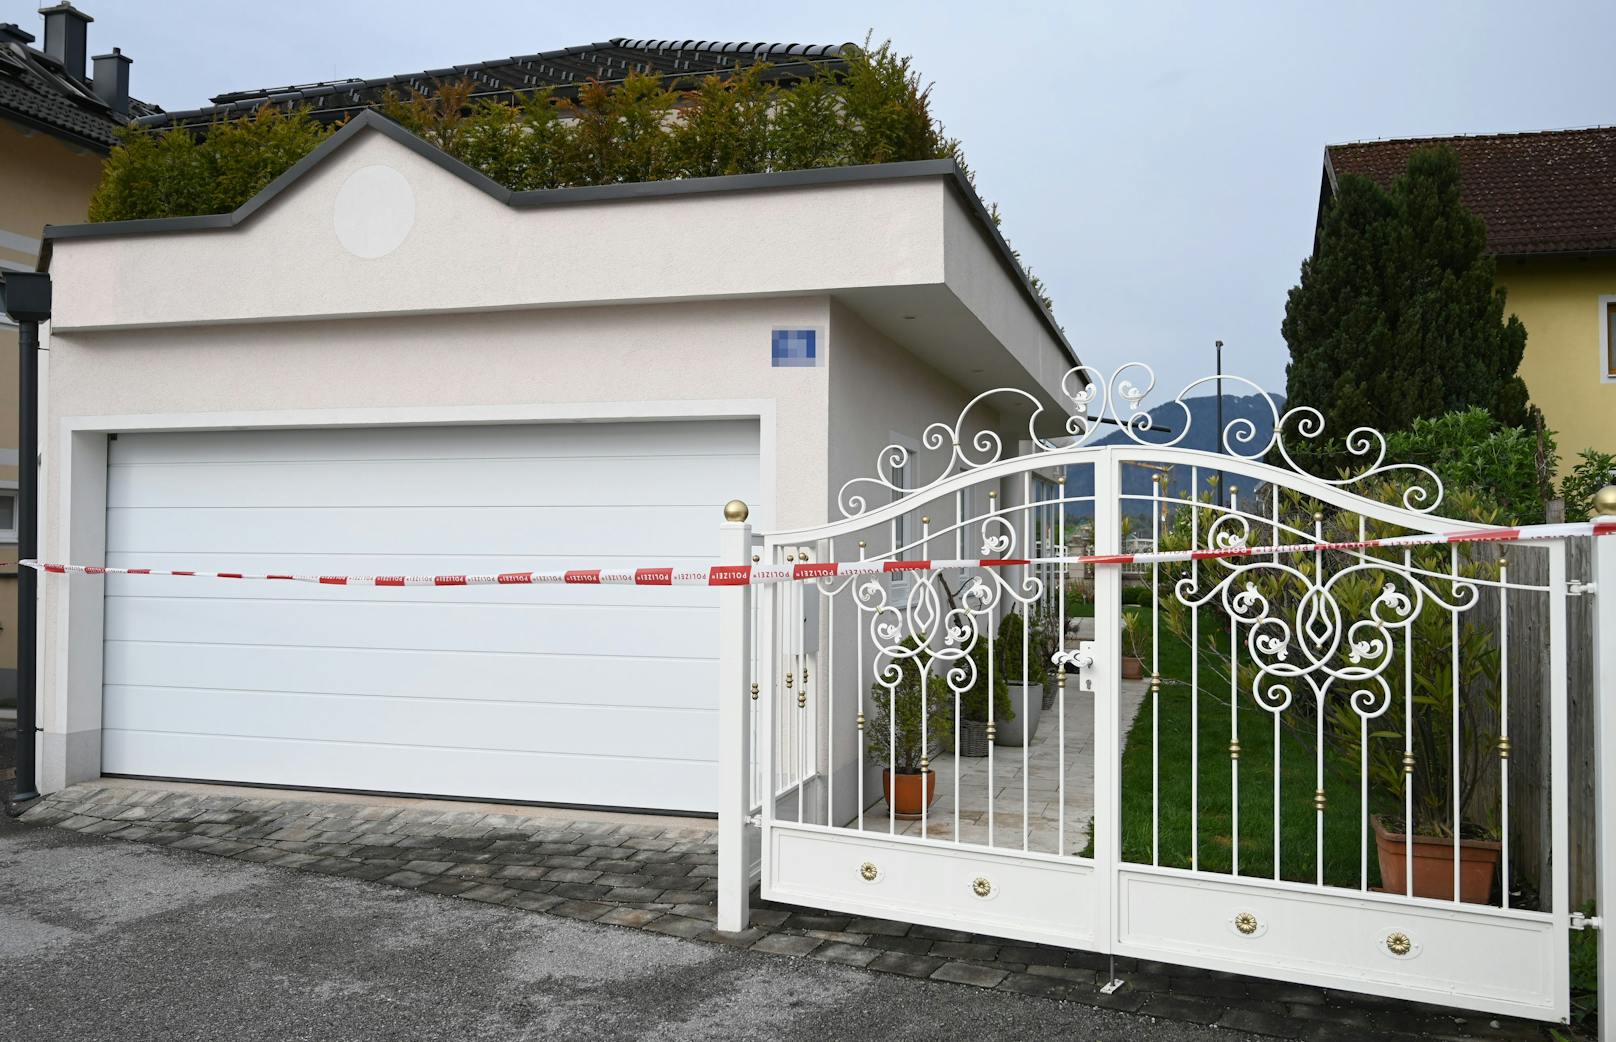 In einem Einfamilienhaus in Wals-Siezenheim (Salzburg) sind in der Nacht auf Donnerstag zwei Frauen erschossen worden. Der mutmaßliche Täter (51) stellte sich selbst.